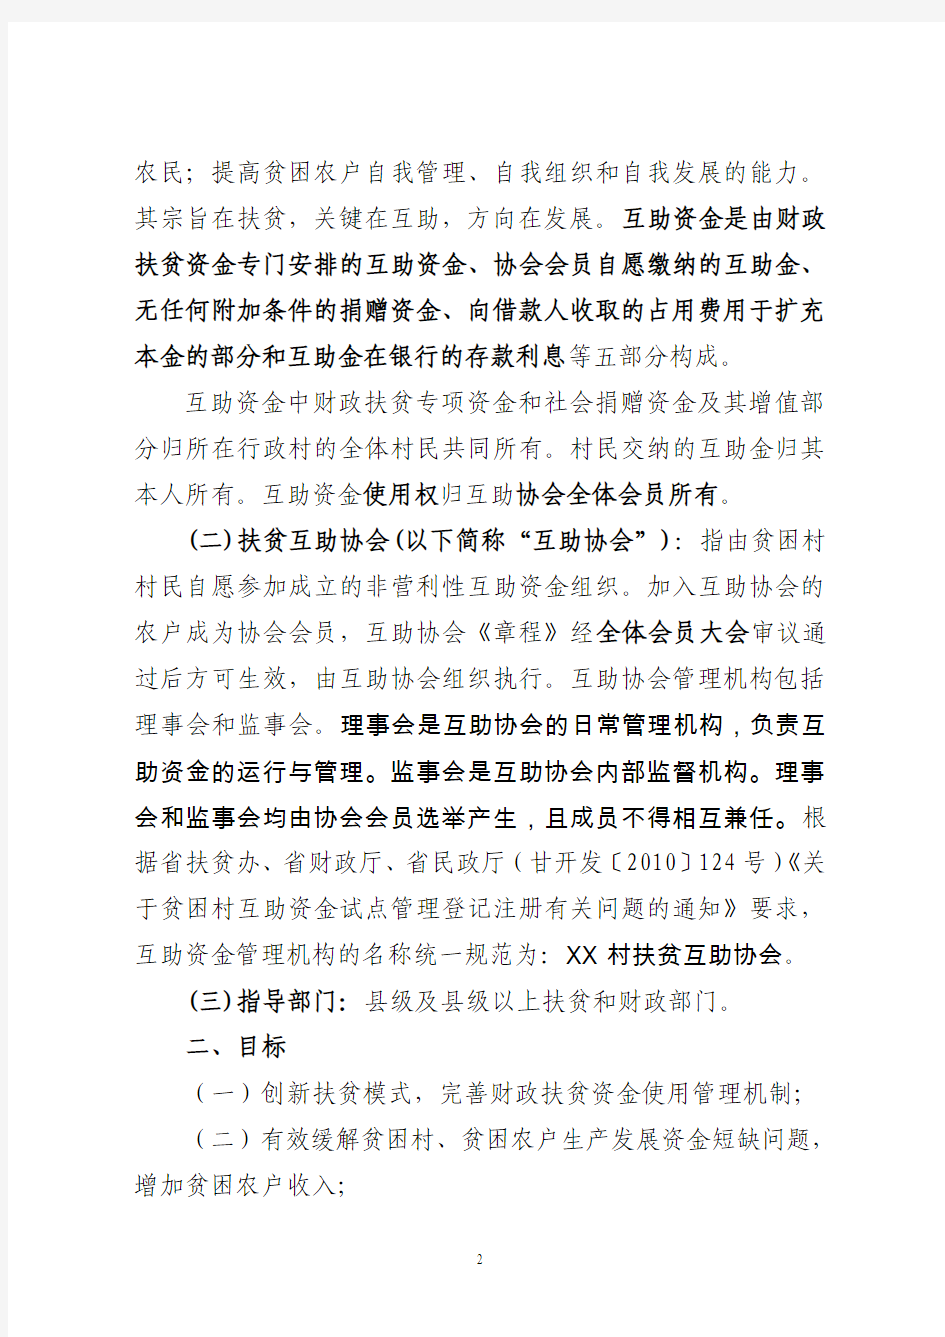 庆阳市贫困村互助资金运行管理规范第二次修改 (最新)2